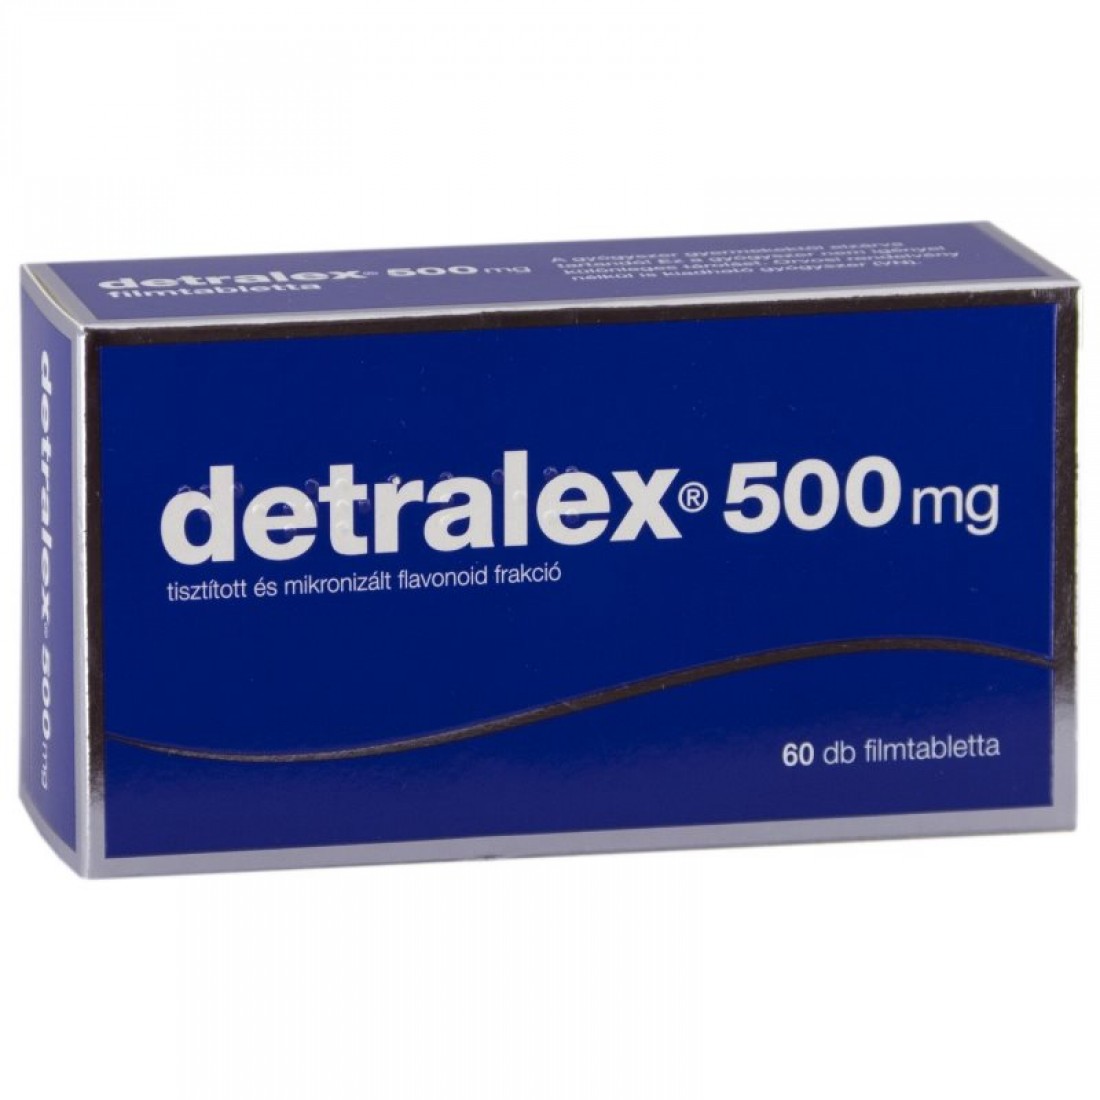 Детралекс аптеки столички. Детралекс 500 мг Франция. Detralex 500 MG. Detralex 500 турецкий. Детралекс 500 60.